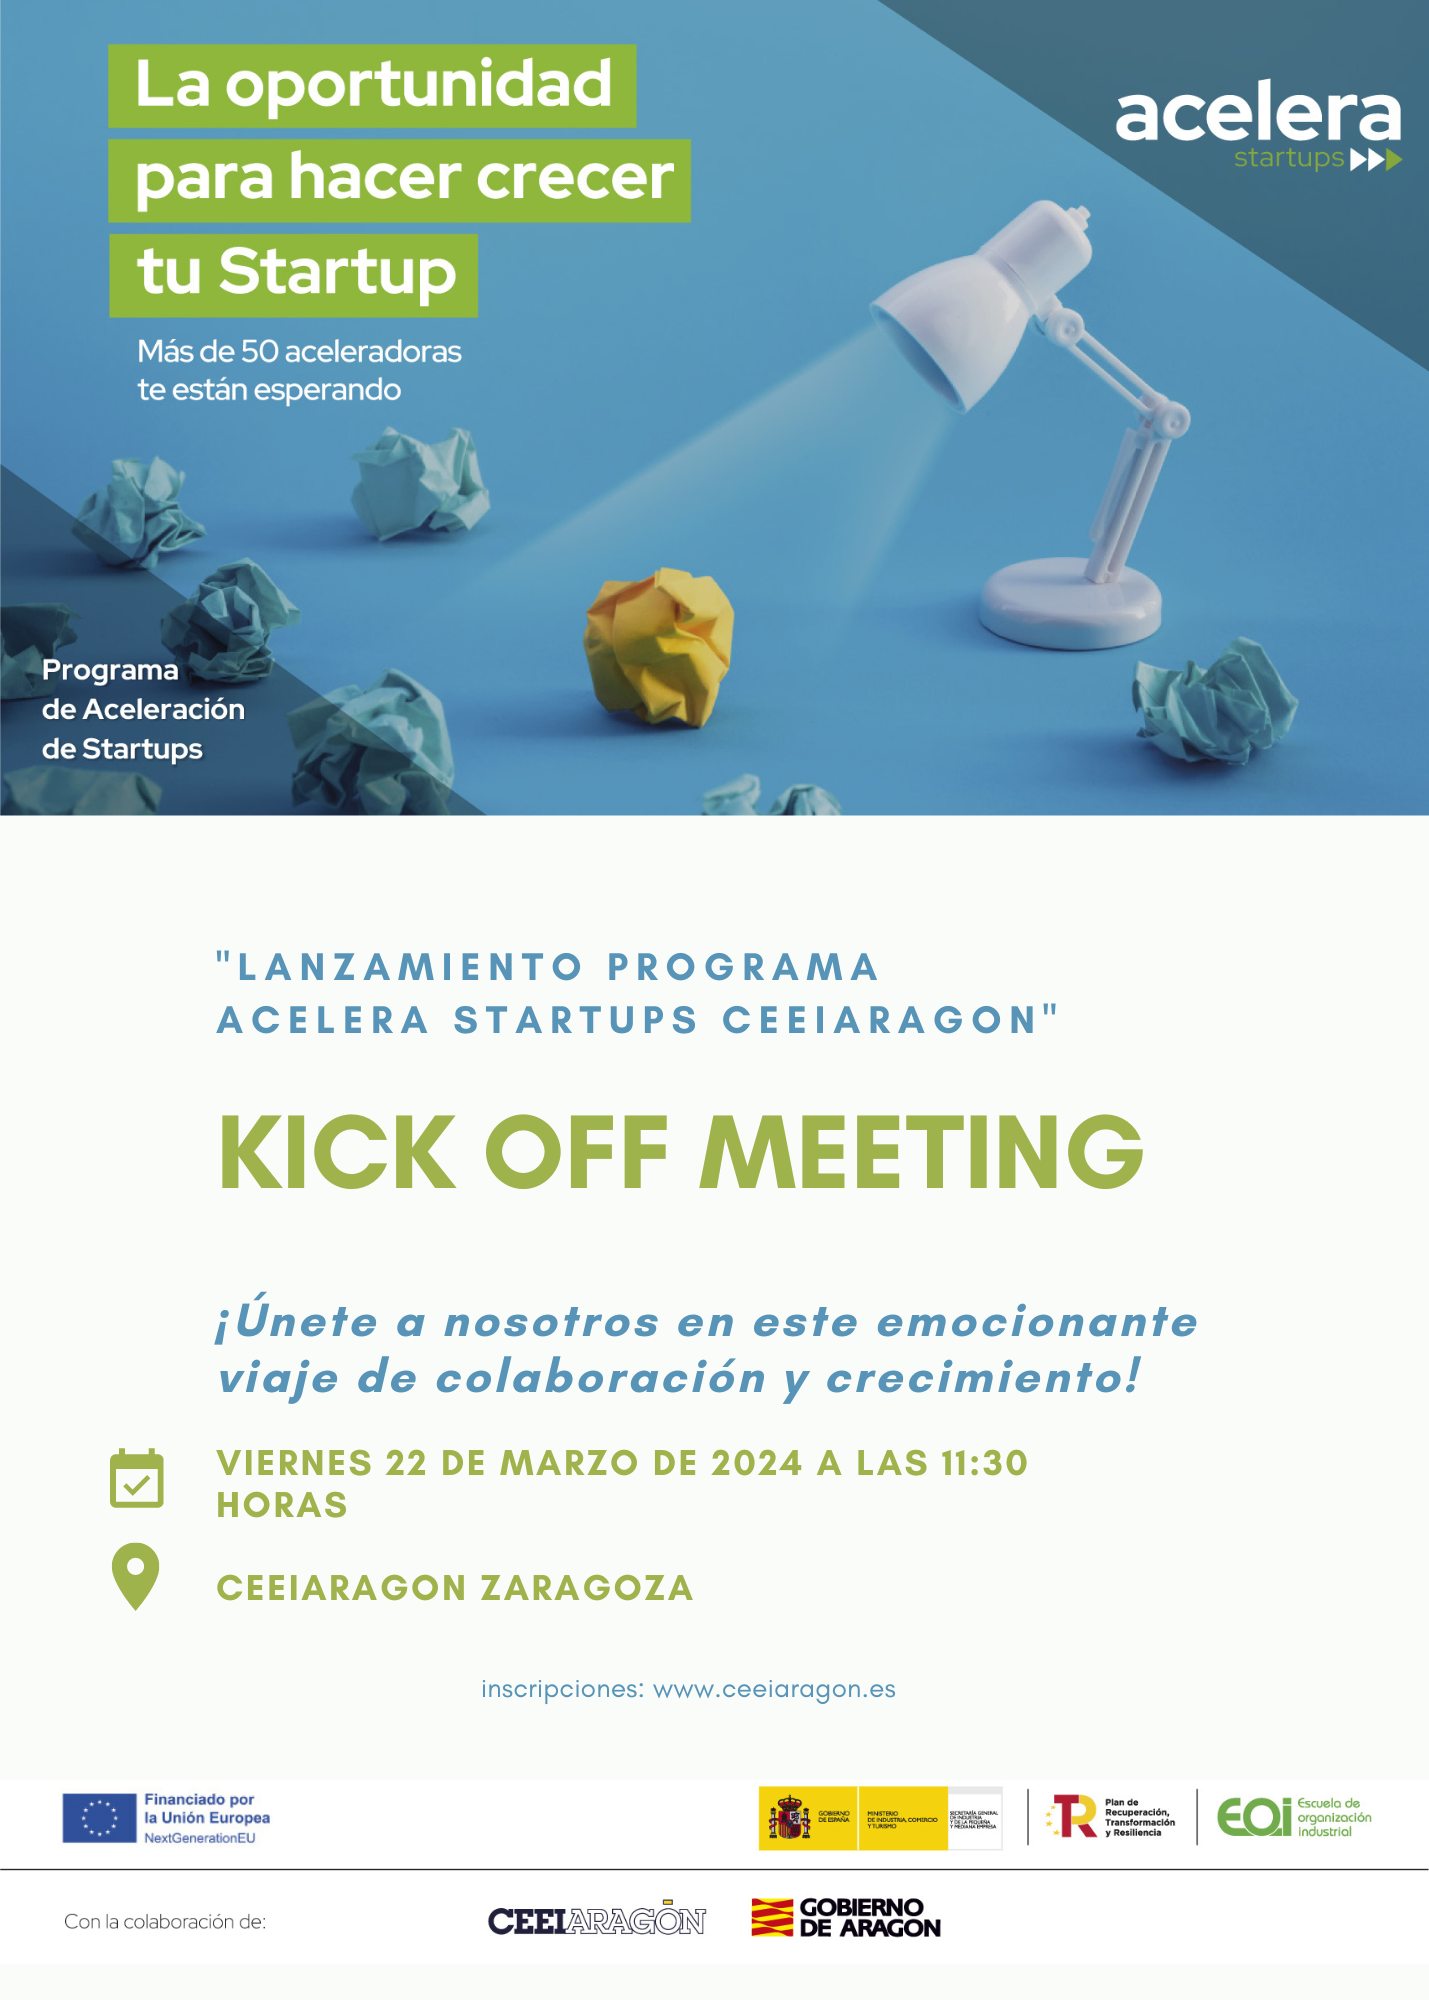 Lanzamiento Programa Acelera Startups CEEIARAGON "Kick off Meeting" AFORO COMPLETO